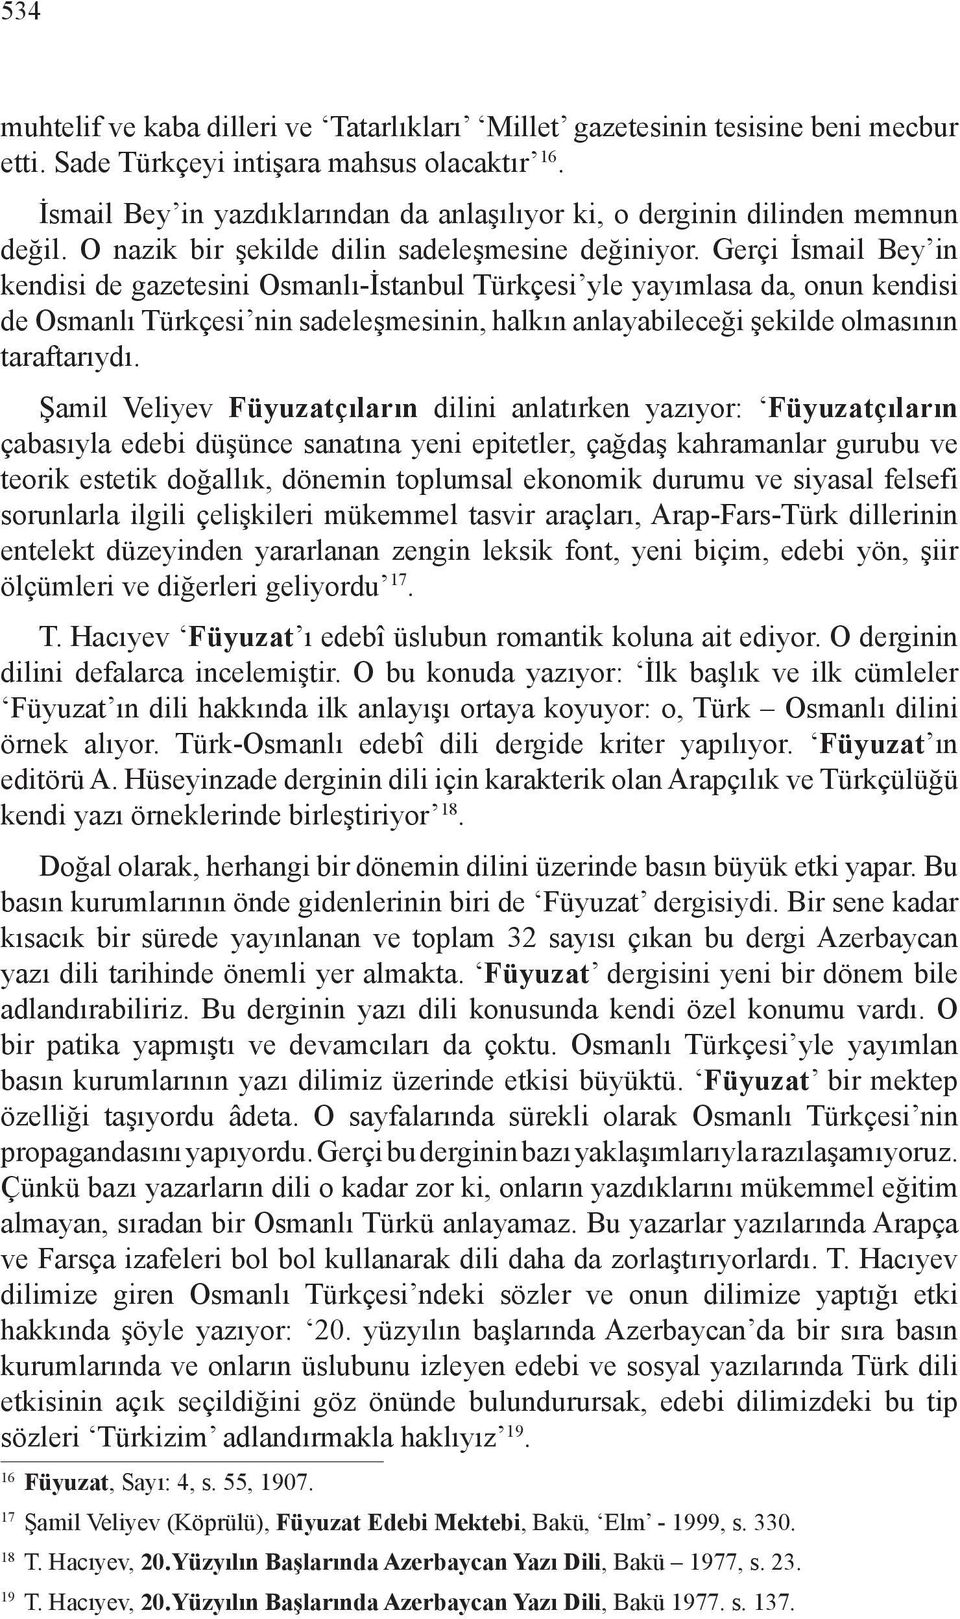 Gerçi İsmail Bey in kendisi de gazetesini Osmanlı-İstanbul Türkçesi yle yayımlasa da, onun kendisi de Osmanlı Türkçesi nin sadeleşmesinin, halkın anlayabileceği şekilde olmasının taraftarıydı.